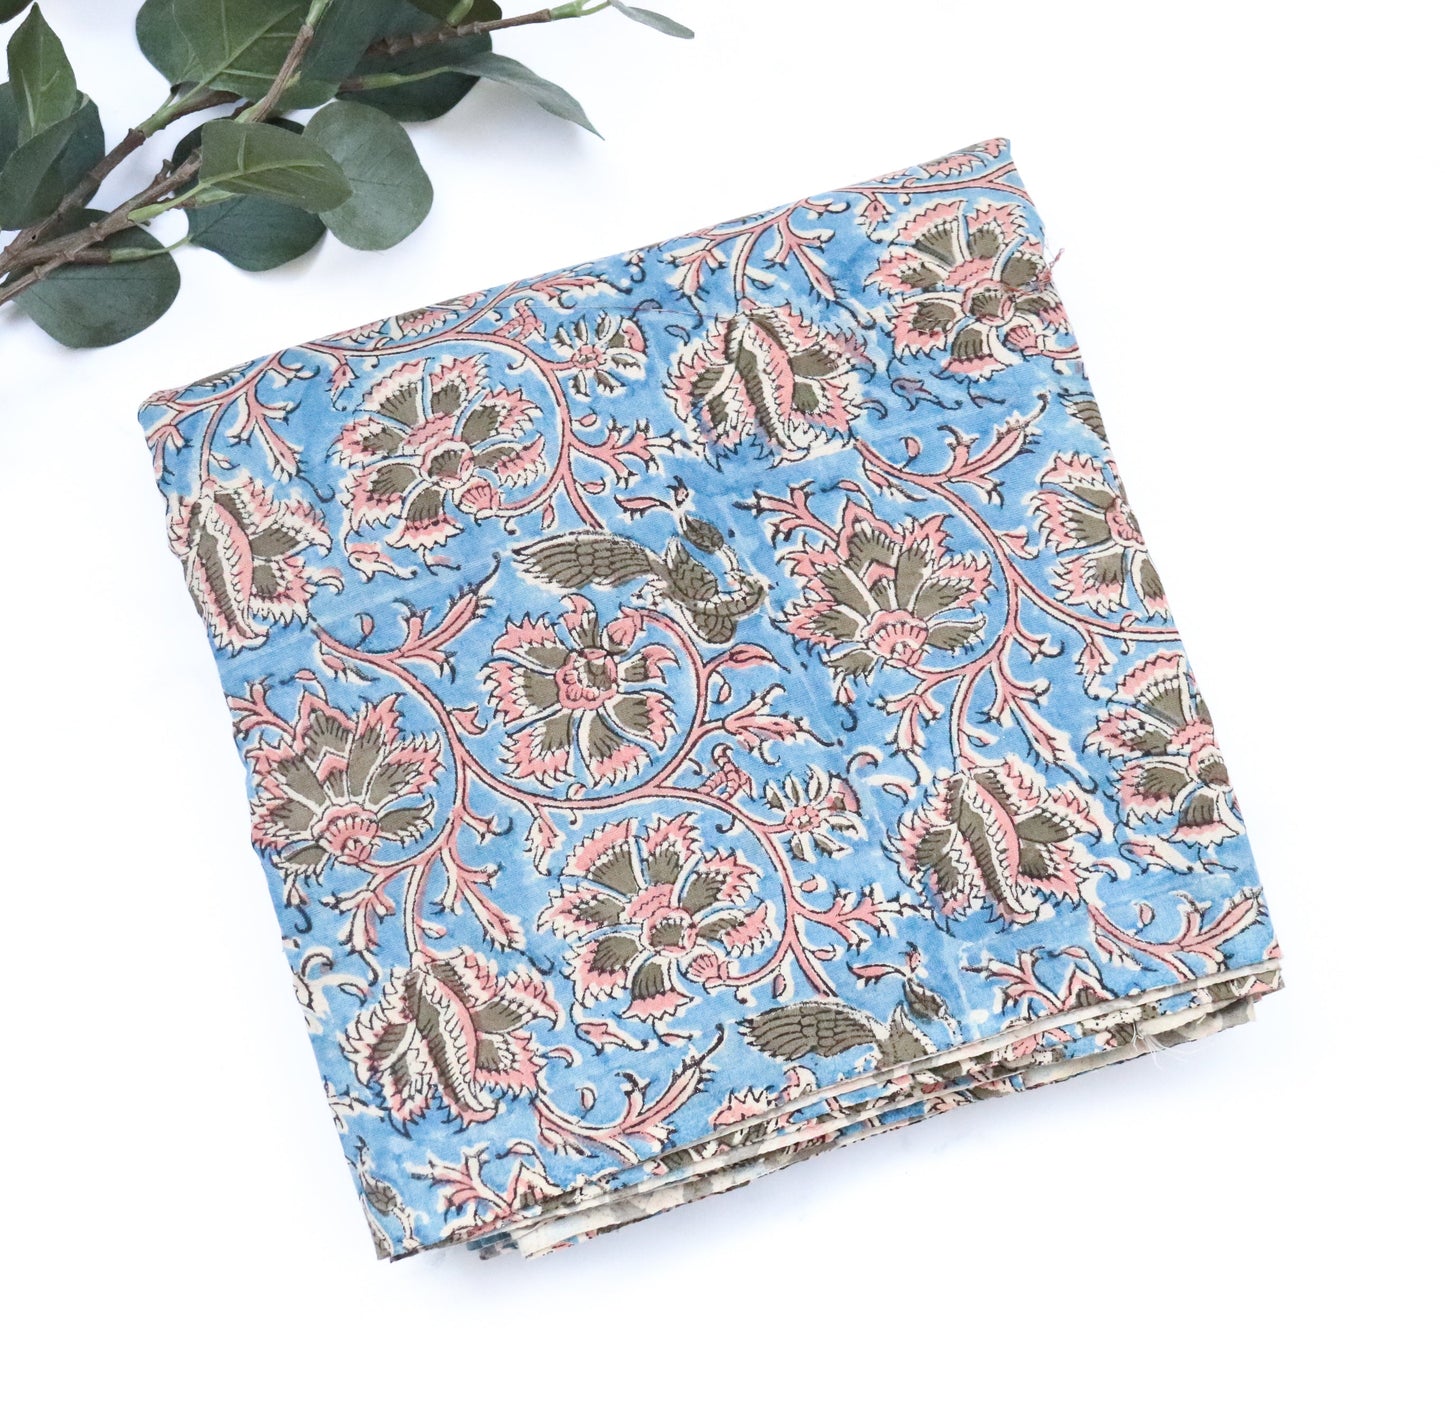 Blue Kalamkari block print fabric per meter - Kalamkari - Kurta fabric - Floral cotton fabric